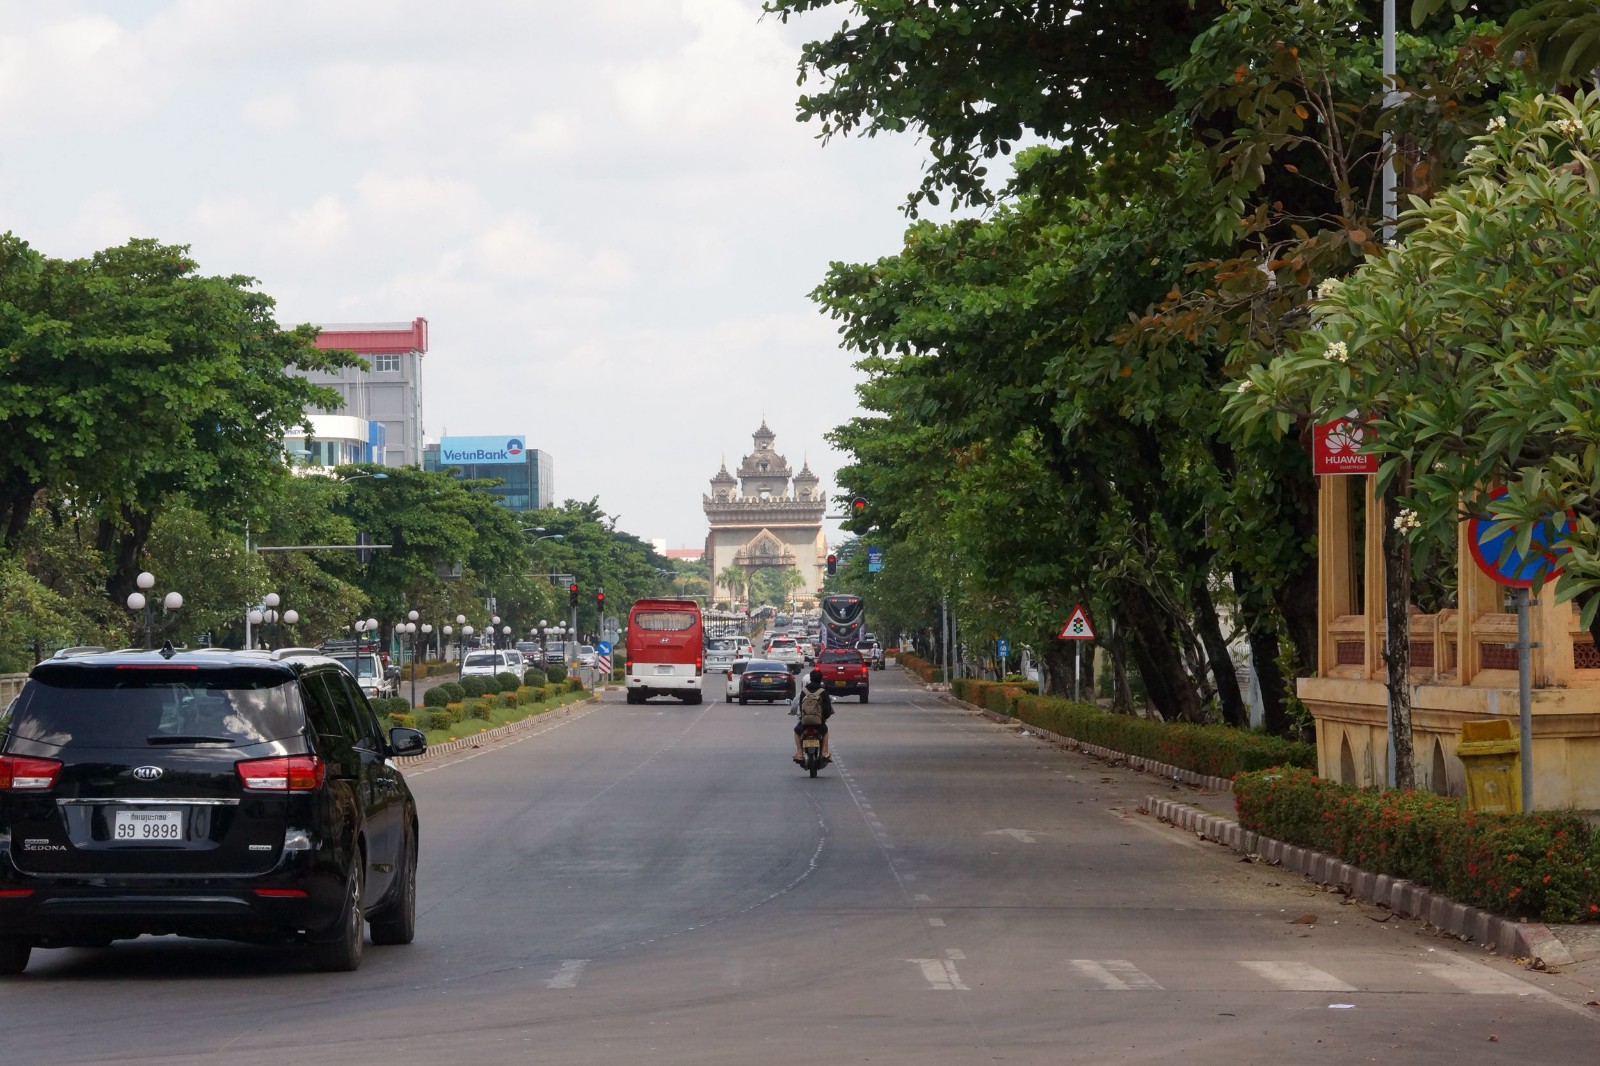 老挝万象街景图片